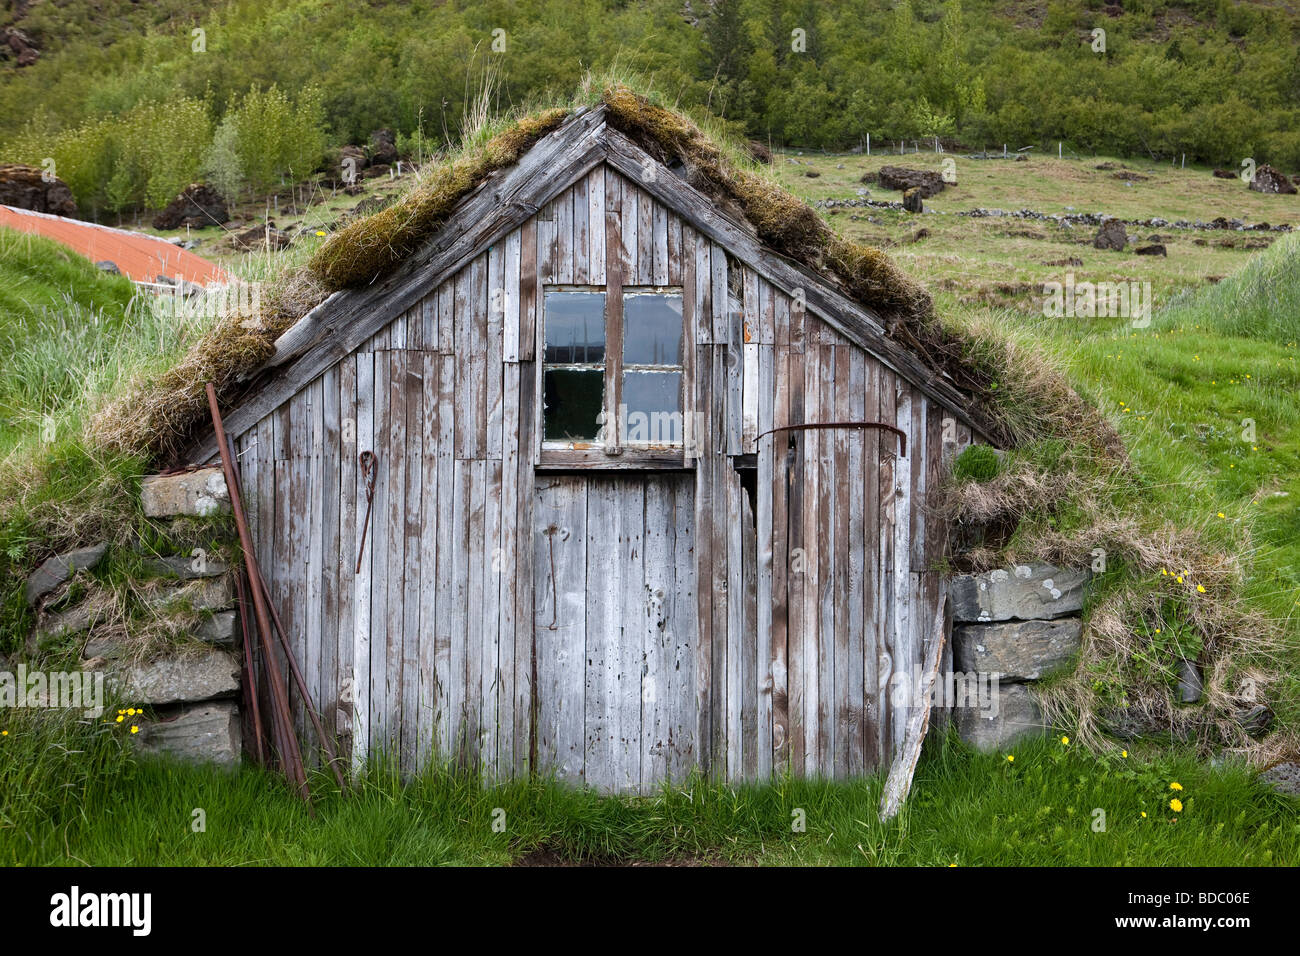 Vieille cabane de la ferme Nupsstadur sur la côte sud de l'Islande Banque D'Images